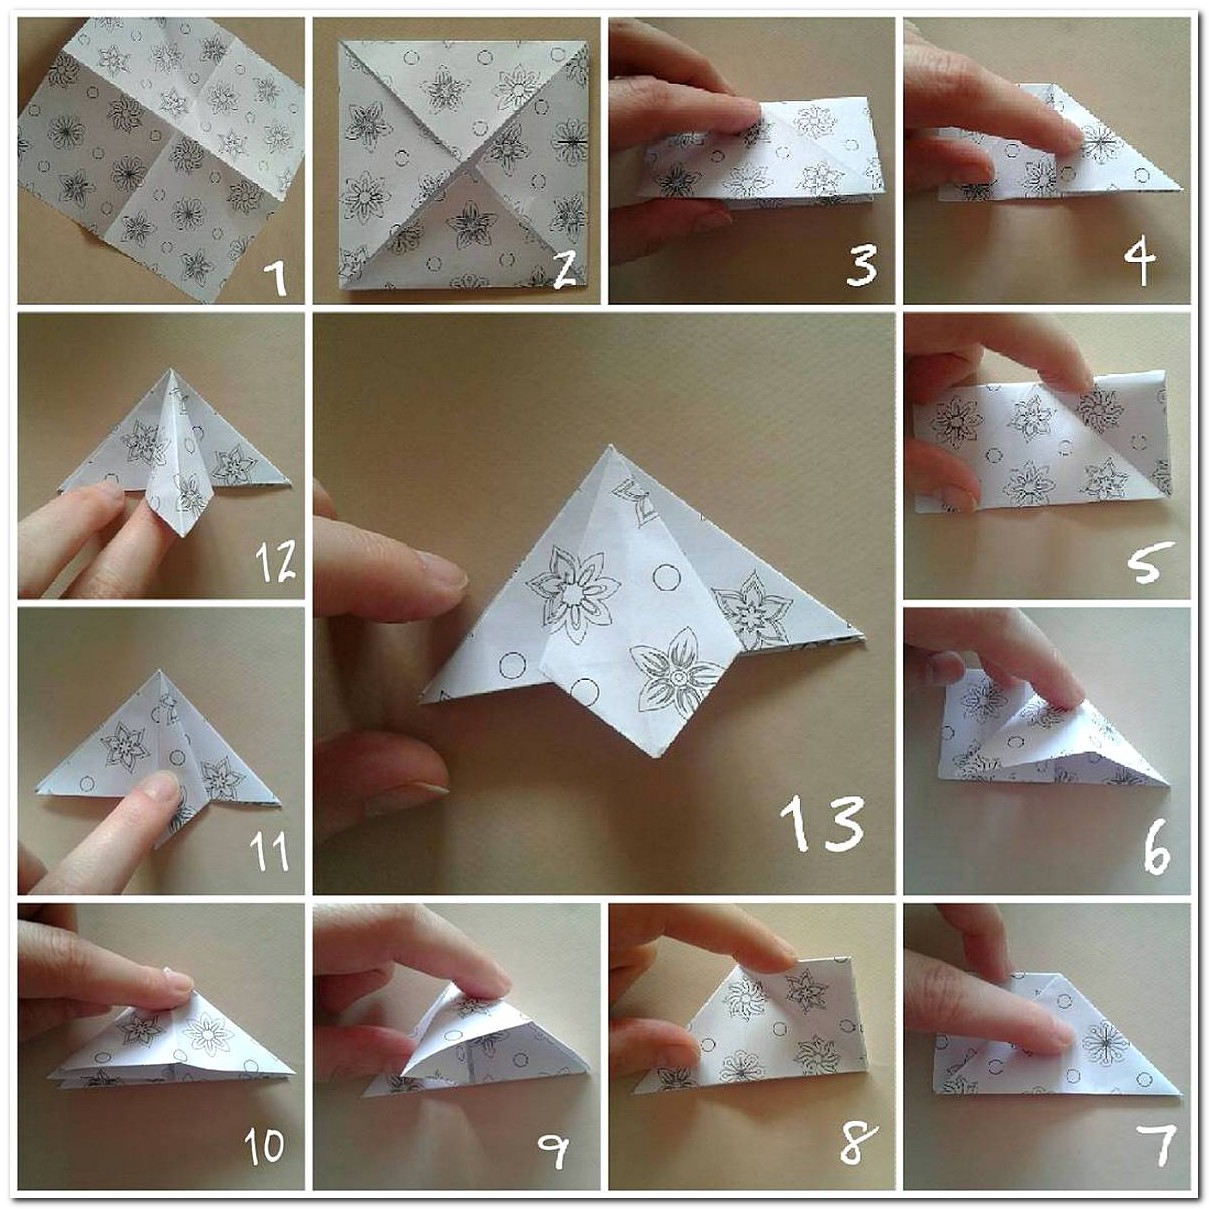  Cara  Membuat  Hiasan Dinding Kelas Dari Kertas Origami  